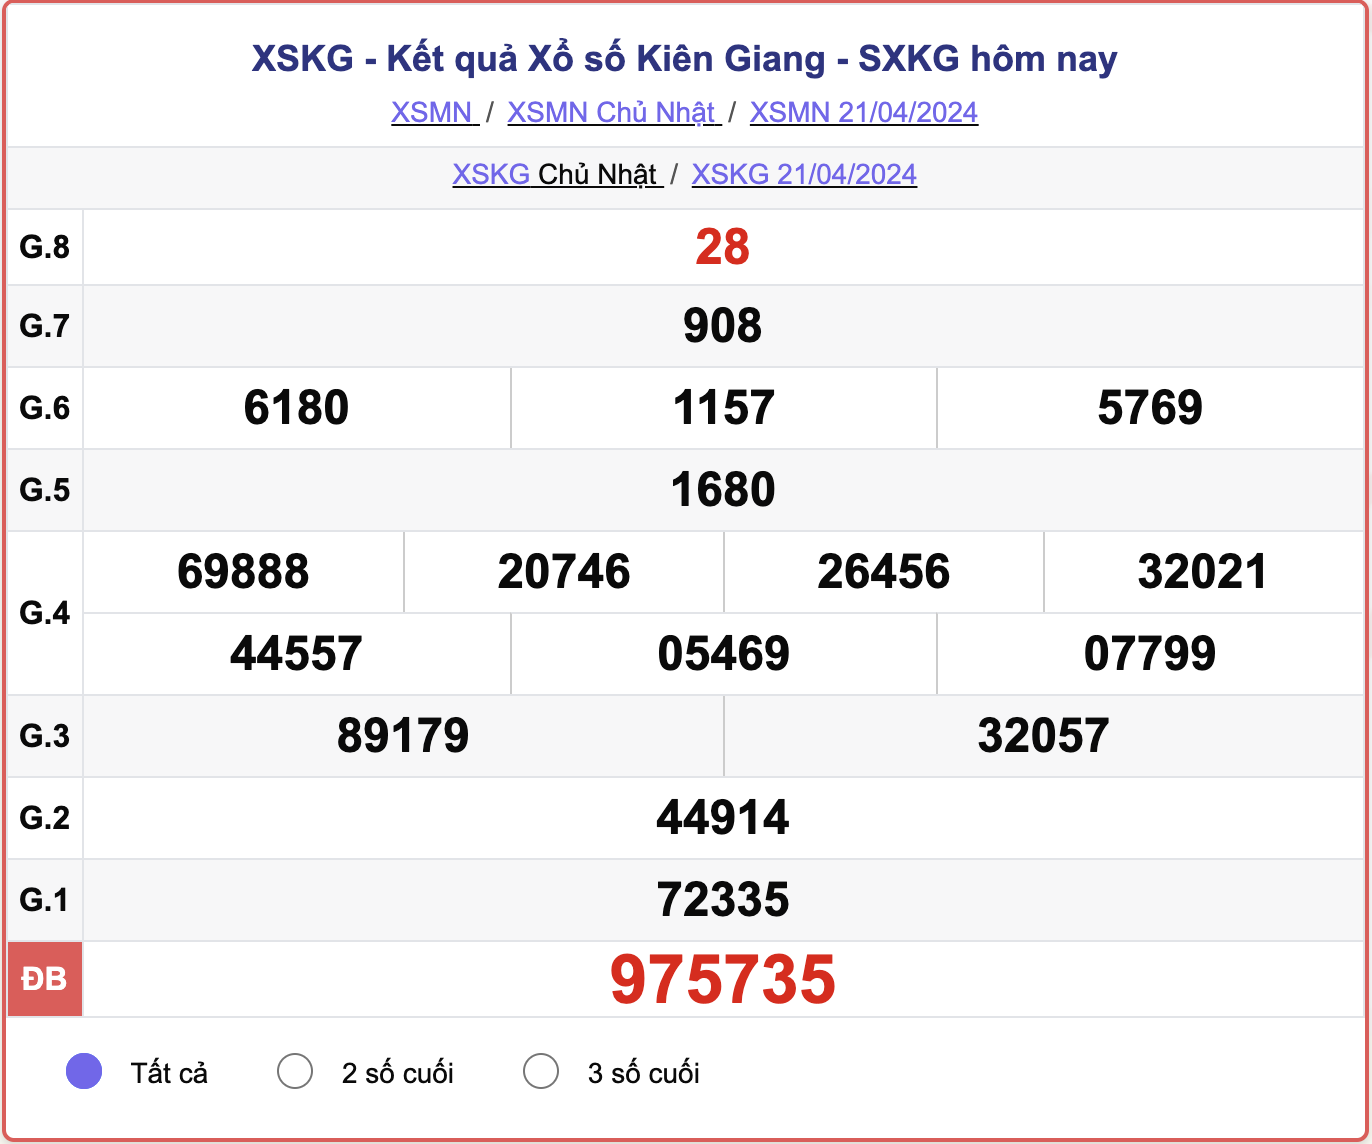 XSKG Chủ nhật, kết quả xổ số Kiên Giang ngày 21/4/2024.